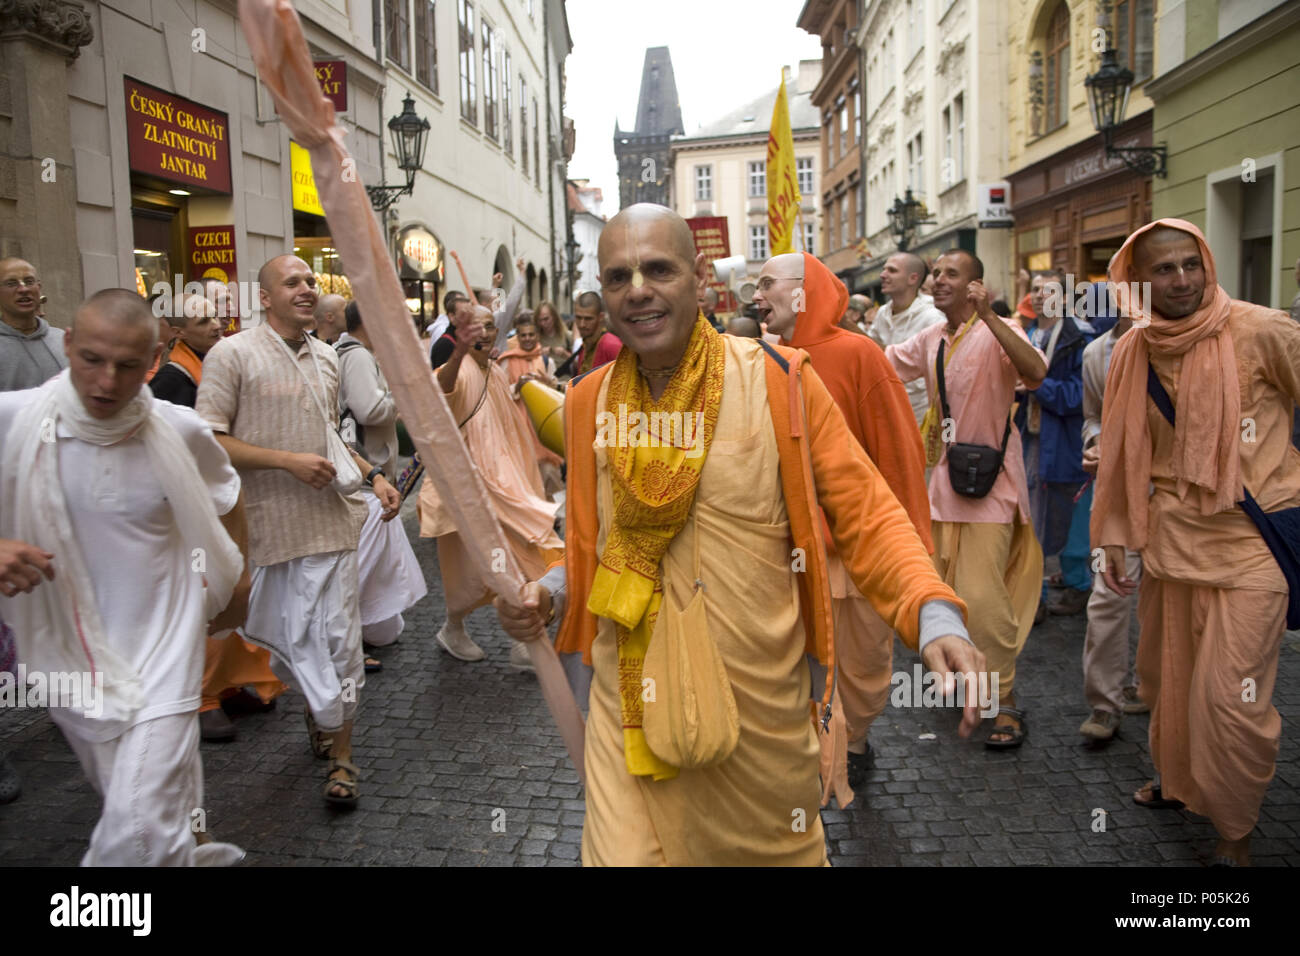 Hari Krishna devotees feiern ein Urlaub in den Straßen von Prag unter Touristen in der Altstadt. Stockfoto